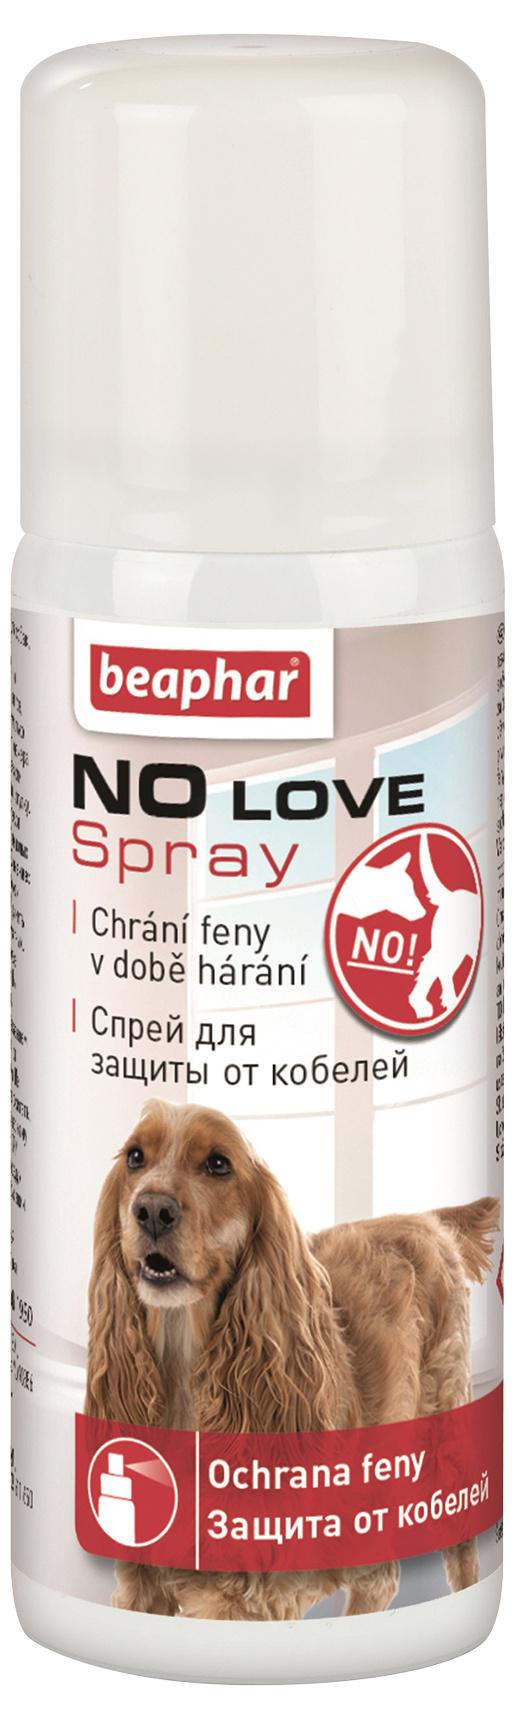 Beaphar  NO LOVE spray pro hárající feny 50ml